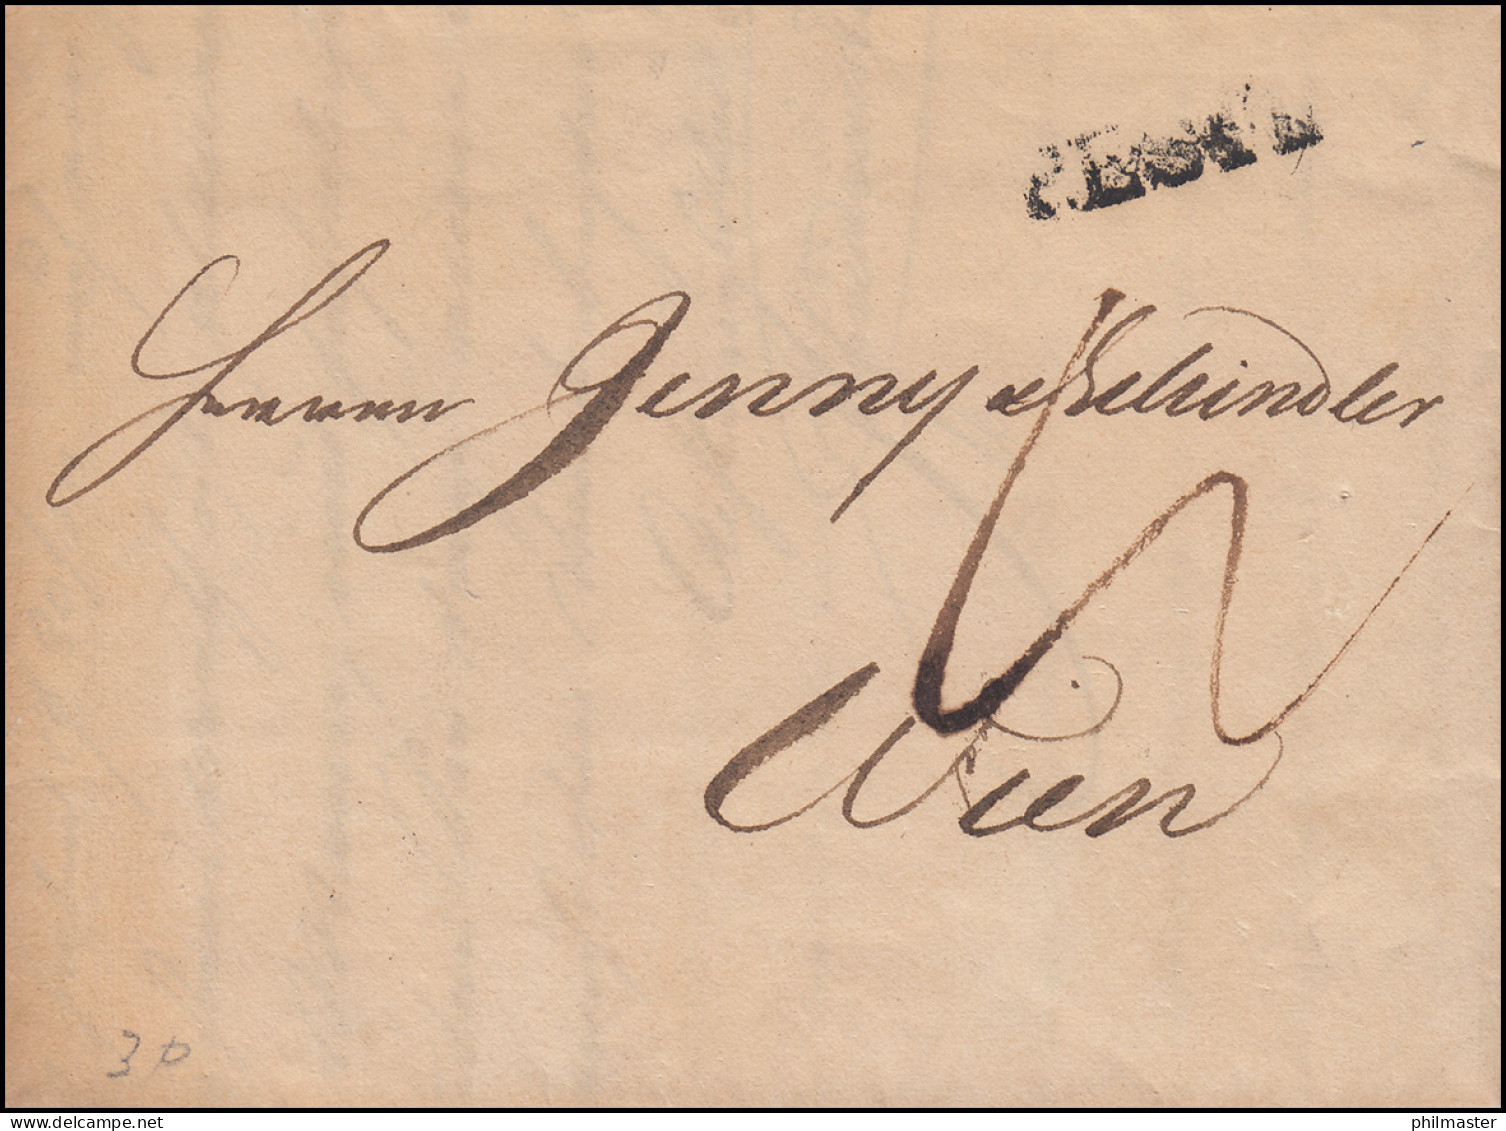 Ungarn Vorphilatelie Brief Einzeiler PESTH Vom 10.6.1842 Nach WIEN 13.6. - ...-1867 Préphilatélie